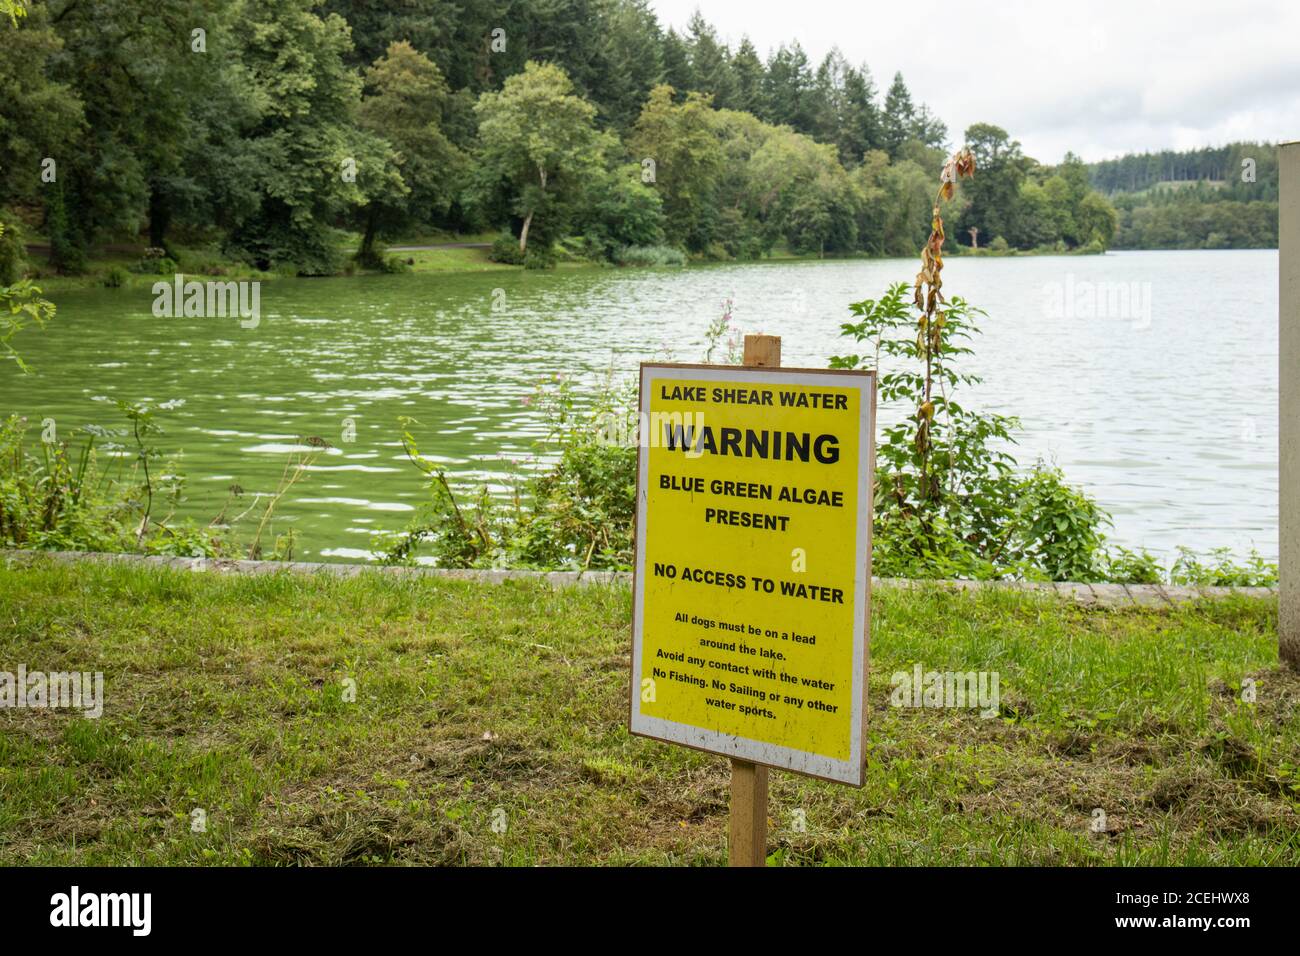 El lago en Shearwater aviso de alerta sobre algas verdes azules que está presente en el agua y un peligro. Longleat Estate, Wiltshire, Inglaterra, Reino Unido Foto de stock